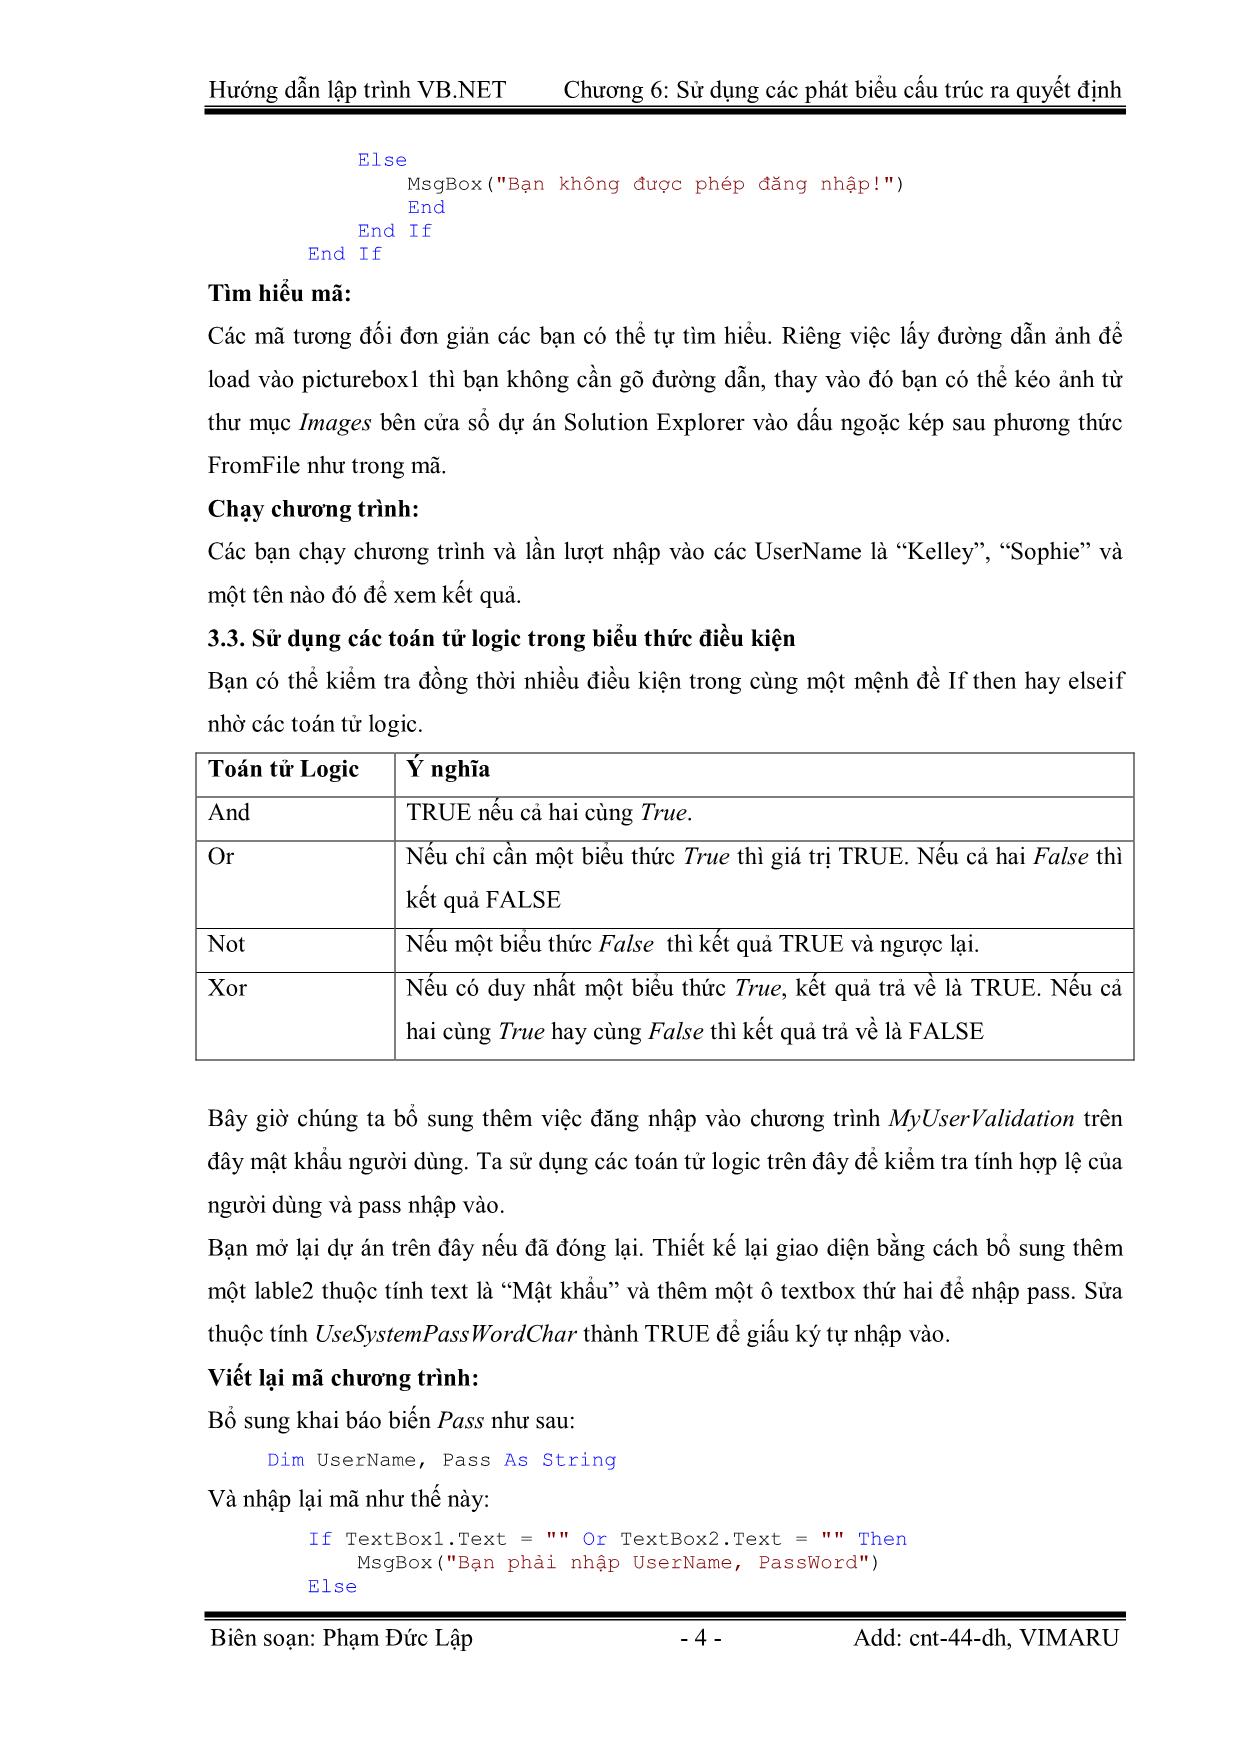 Giáo trình Hướng dẫn lập trình VB.NET - Chương 6: Sử dụng các phát biểu cấu trúc ra quyết định - Phạm Đức Lập trang 4